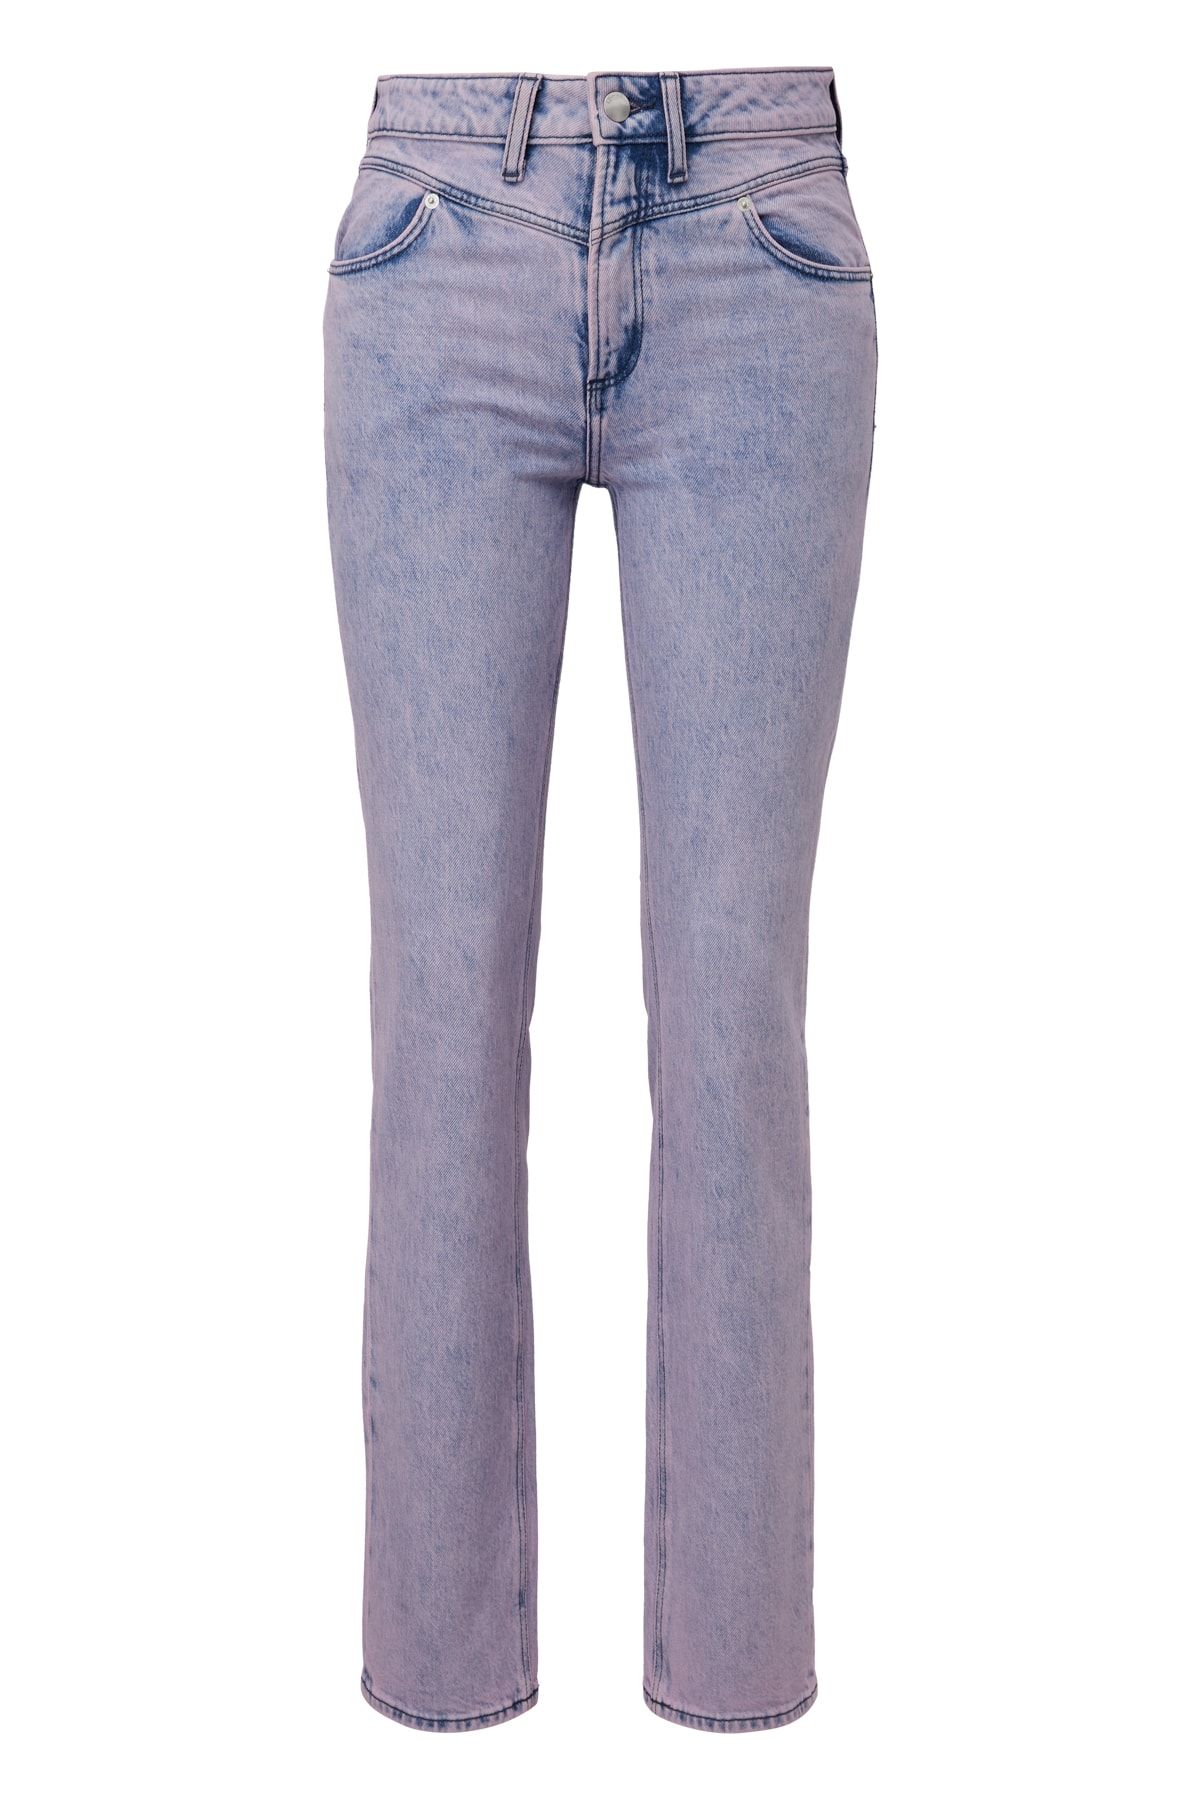 Lila QS by s.Oliver für Trendyol Damen Online Jeans Kaufen 